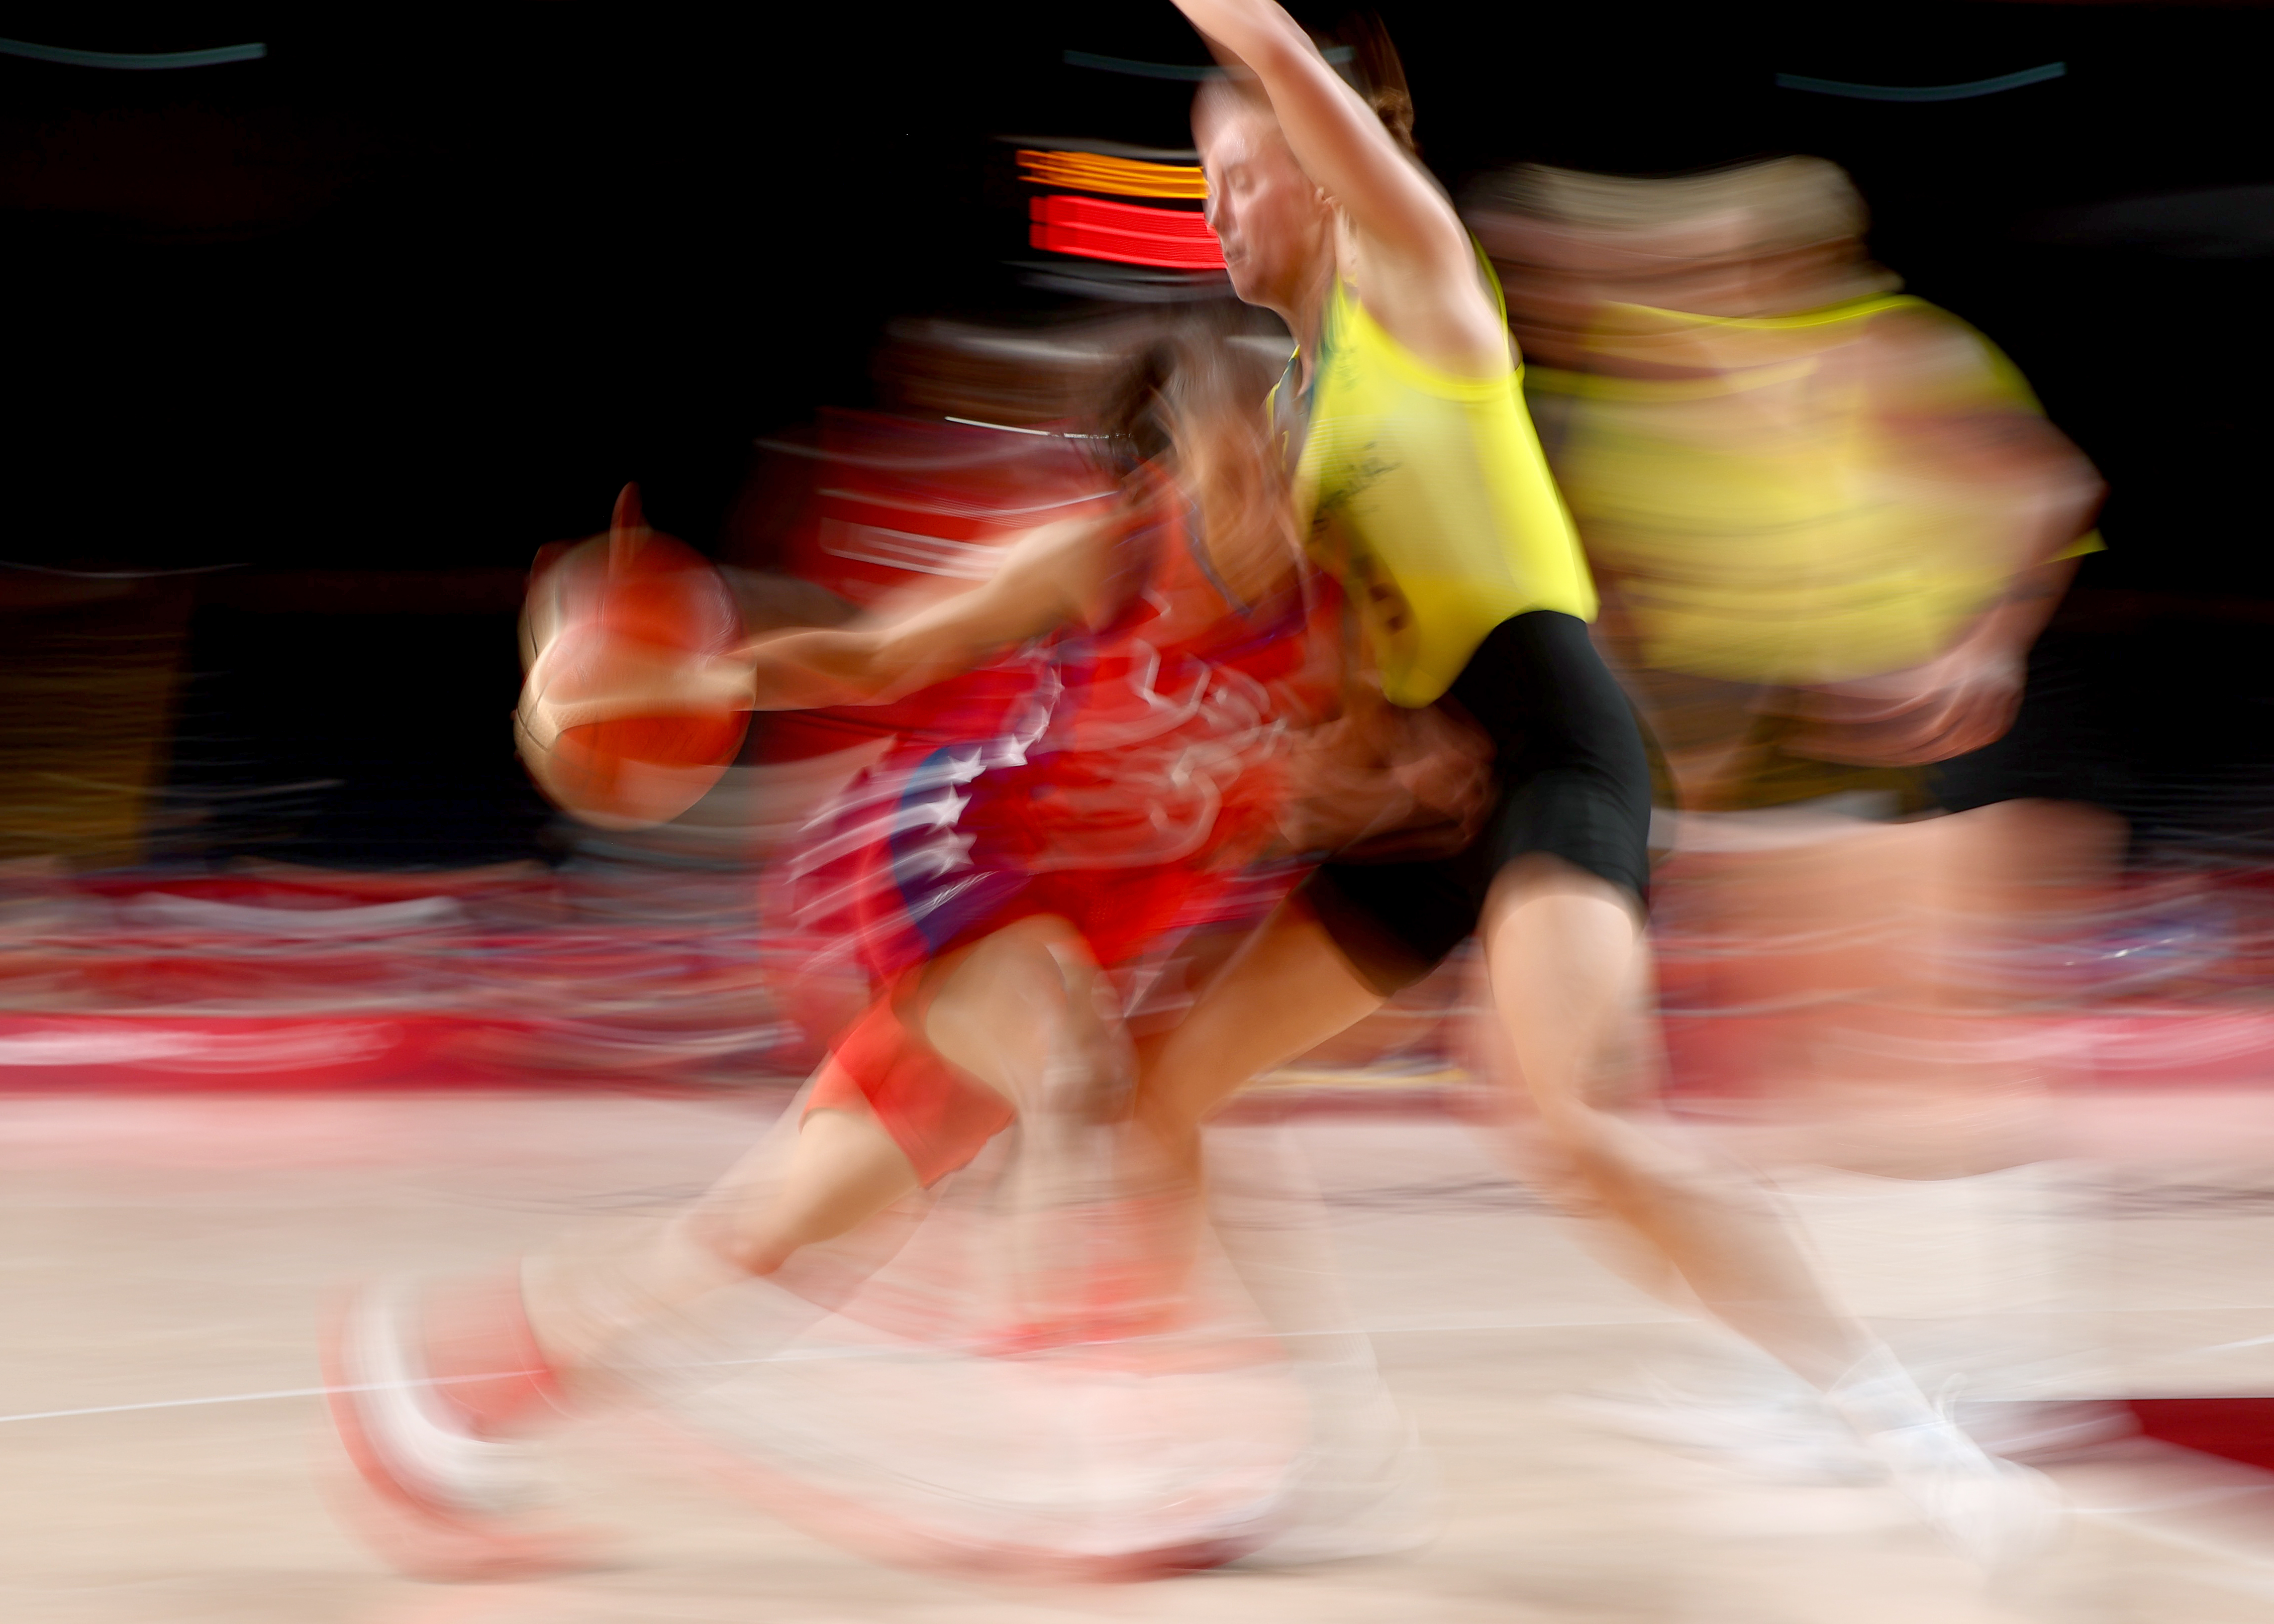 Una imagen del partido del torneo femenino de básquet entre Australia y Estados Unidos.